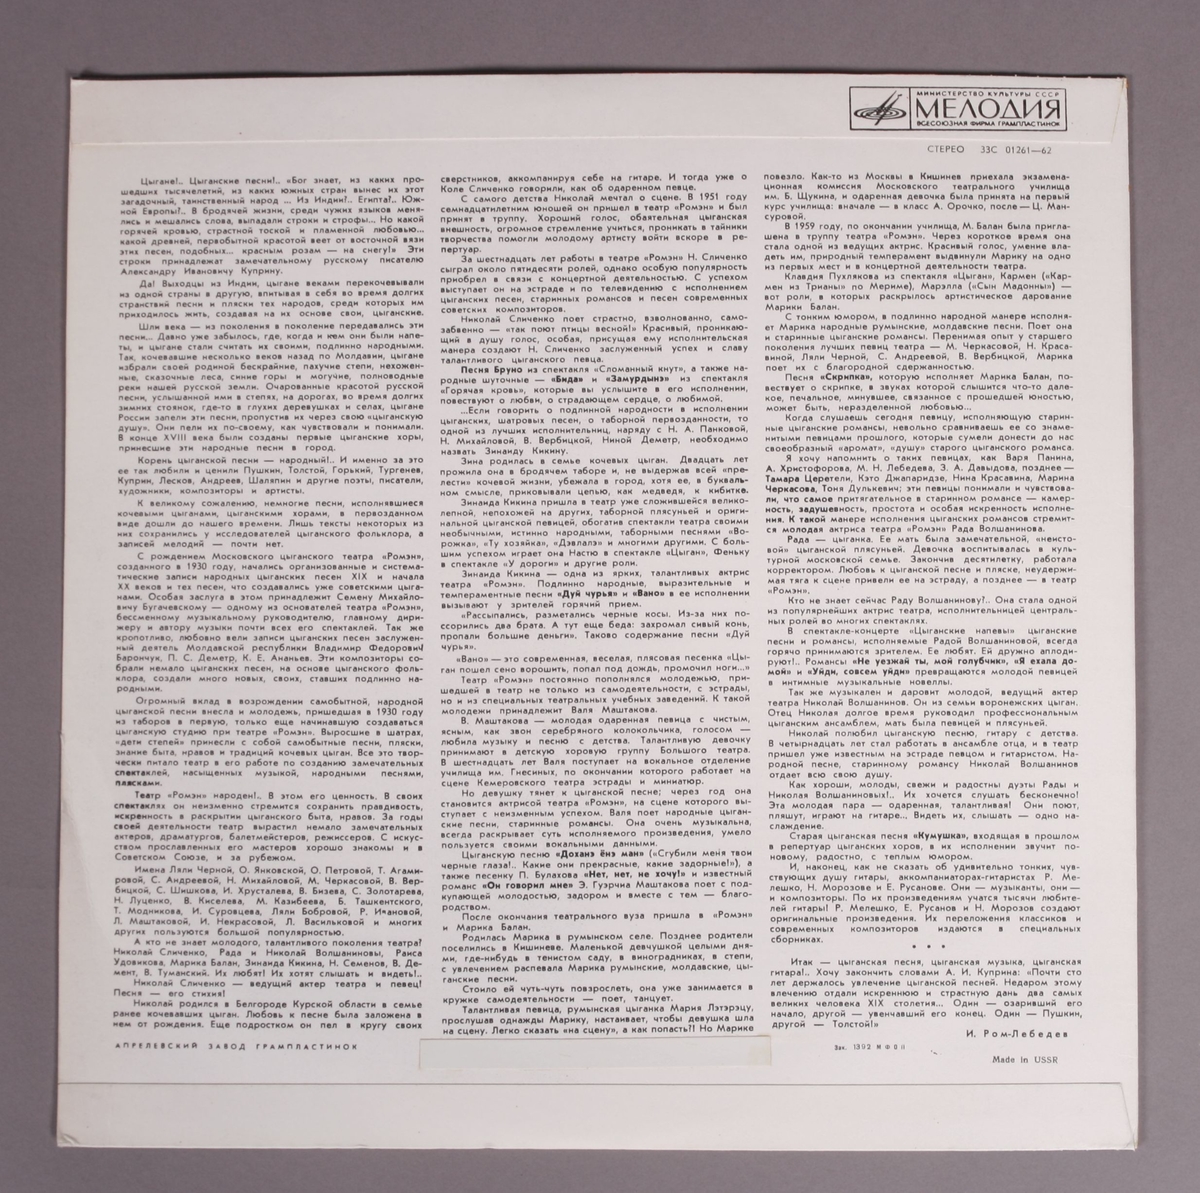 Grammofonplate i svart vinyl og plateomslag i papp med omslagscover av plast. Ligger med en utgave av baksiden som er oversatt til engelsk (se bilde). Platen ligger i en plastlomme.